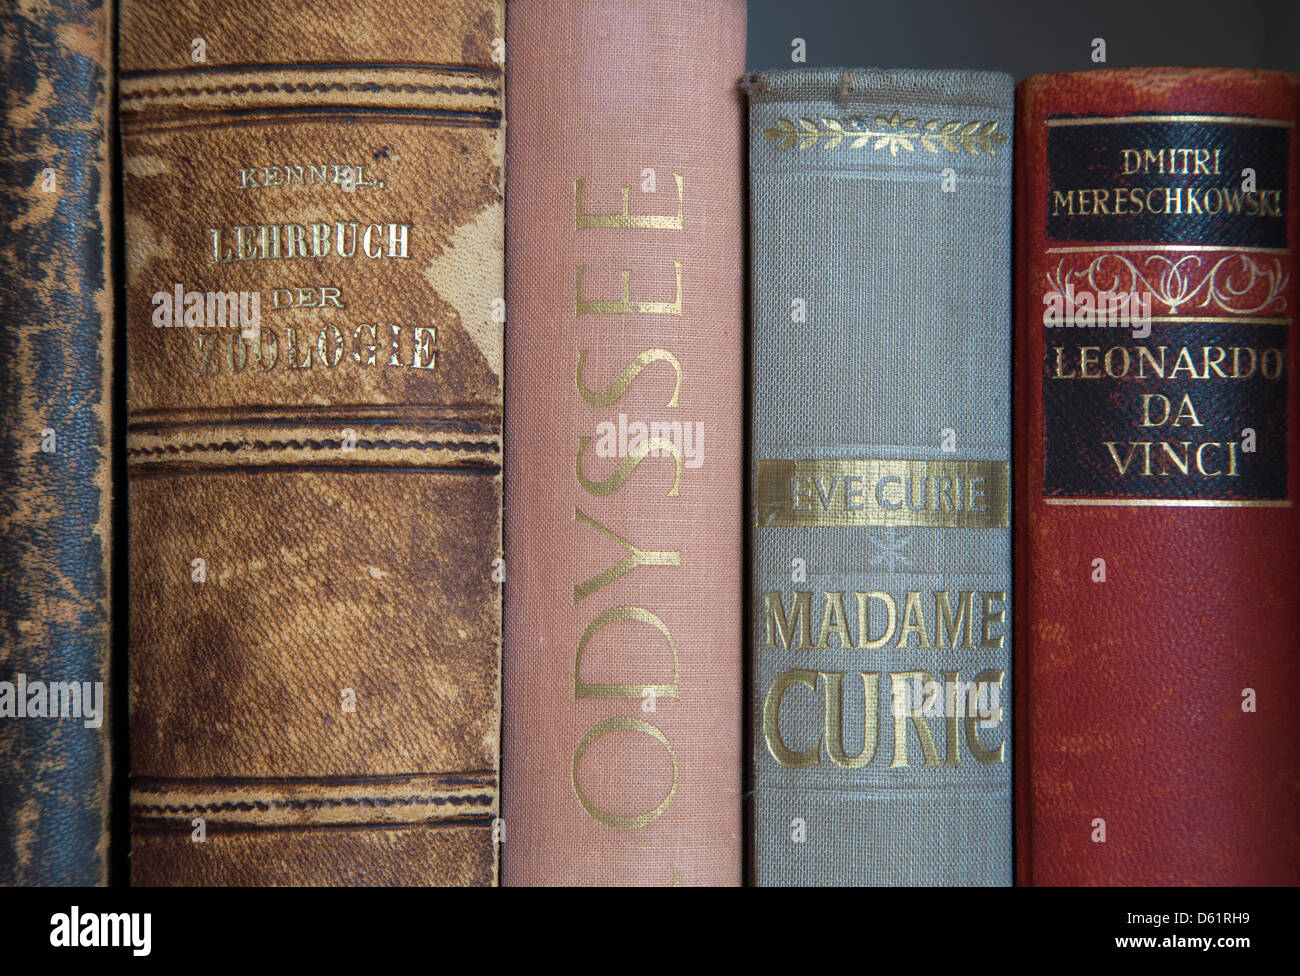 Un'immagine ravvicinata di alcuni vecchi libri sulla natura, zoologia, signora Curie, e Leonardo da Vinci. Alte Bücher. Foto Stock